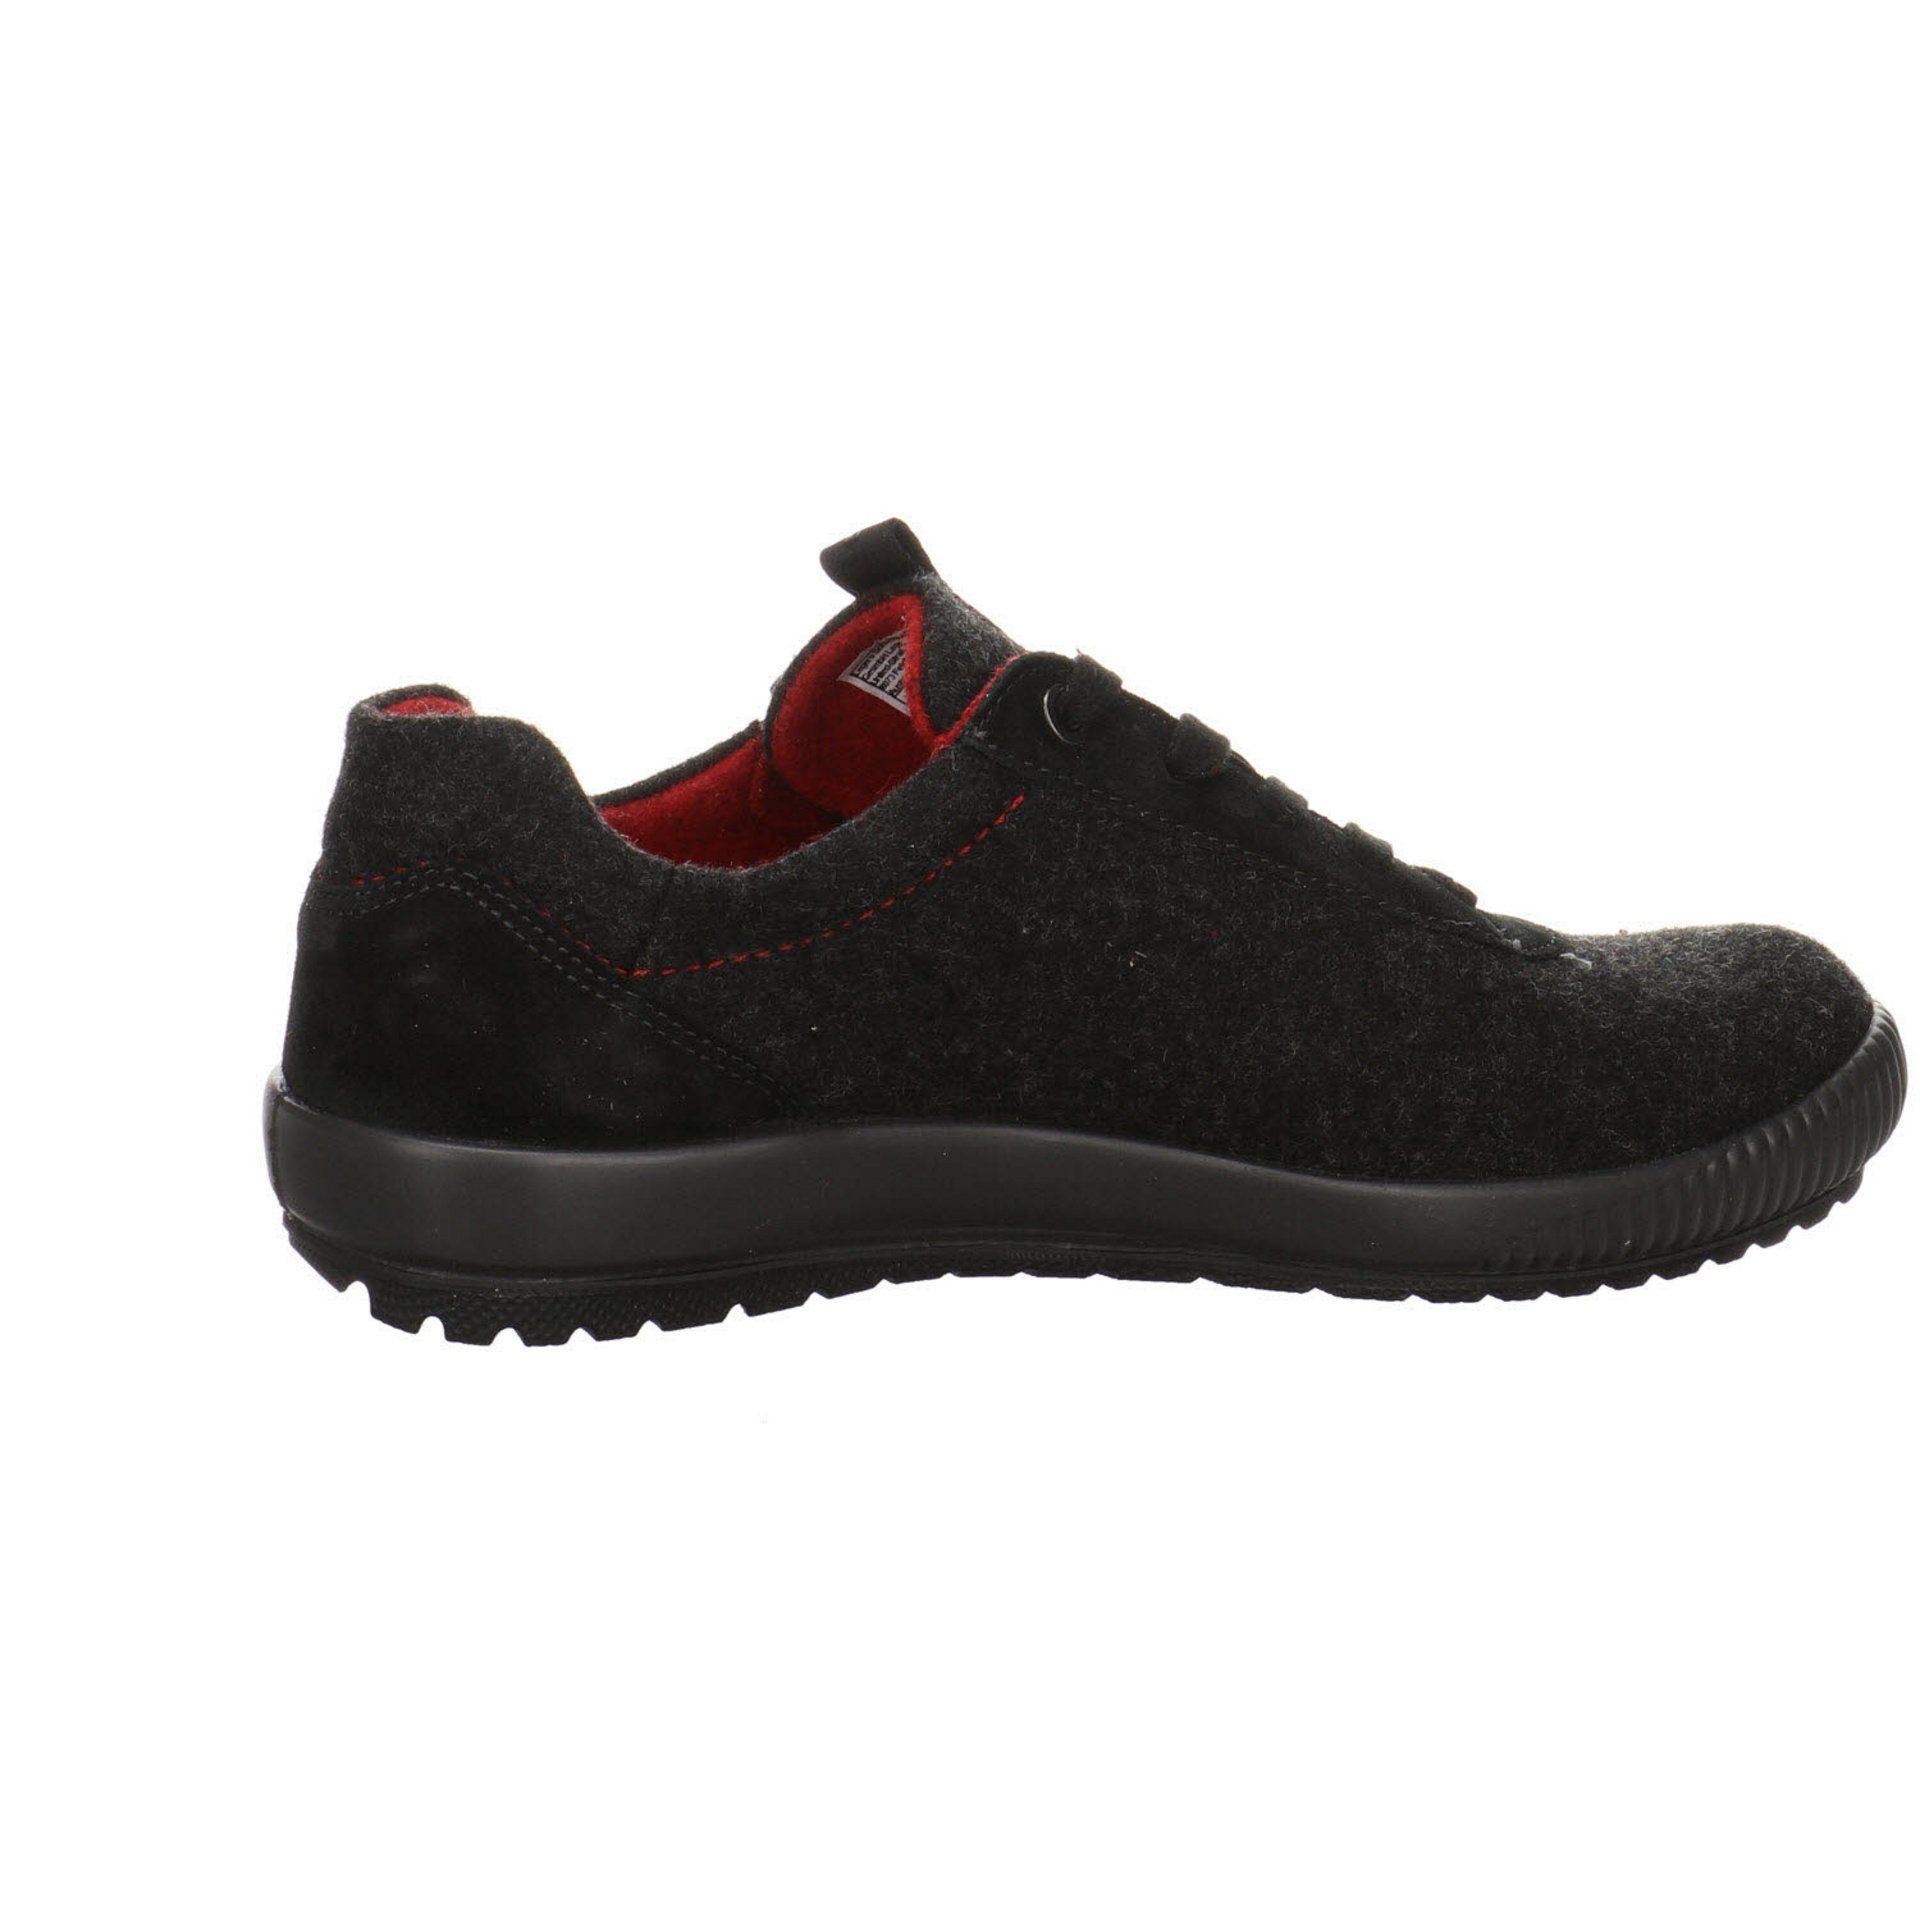 dunkel Legero schwarz Leder-/Textilkombination Schnürschuh 4.0 Goretex Sneaker Sneaker Damen Schuhe Tanaro